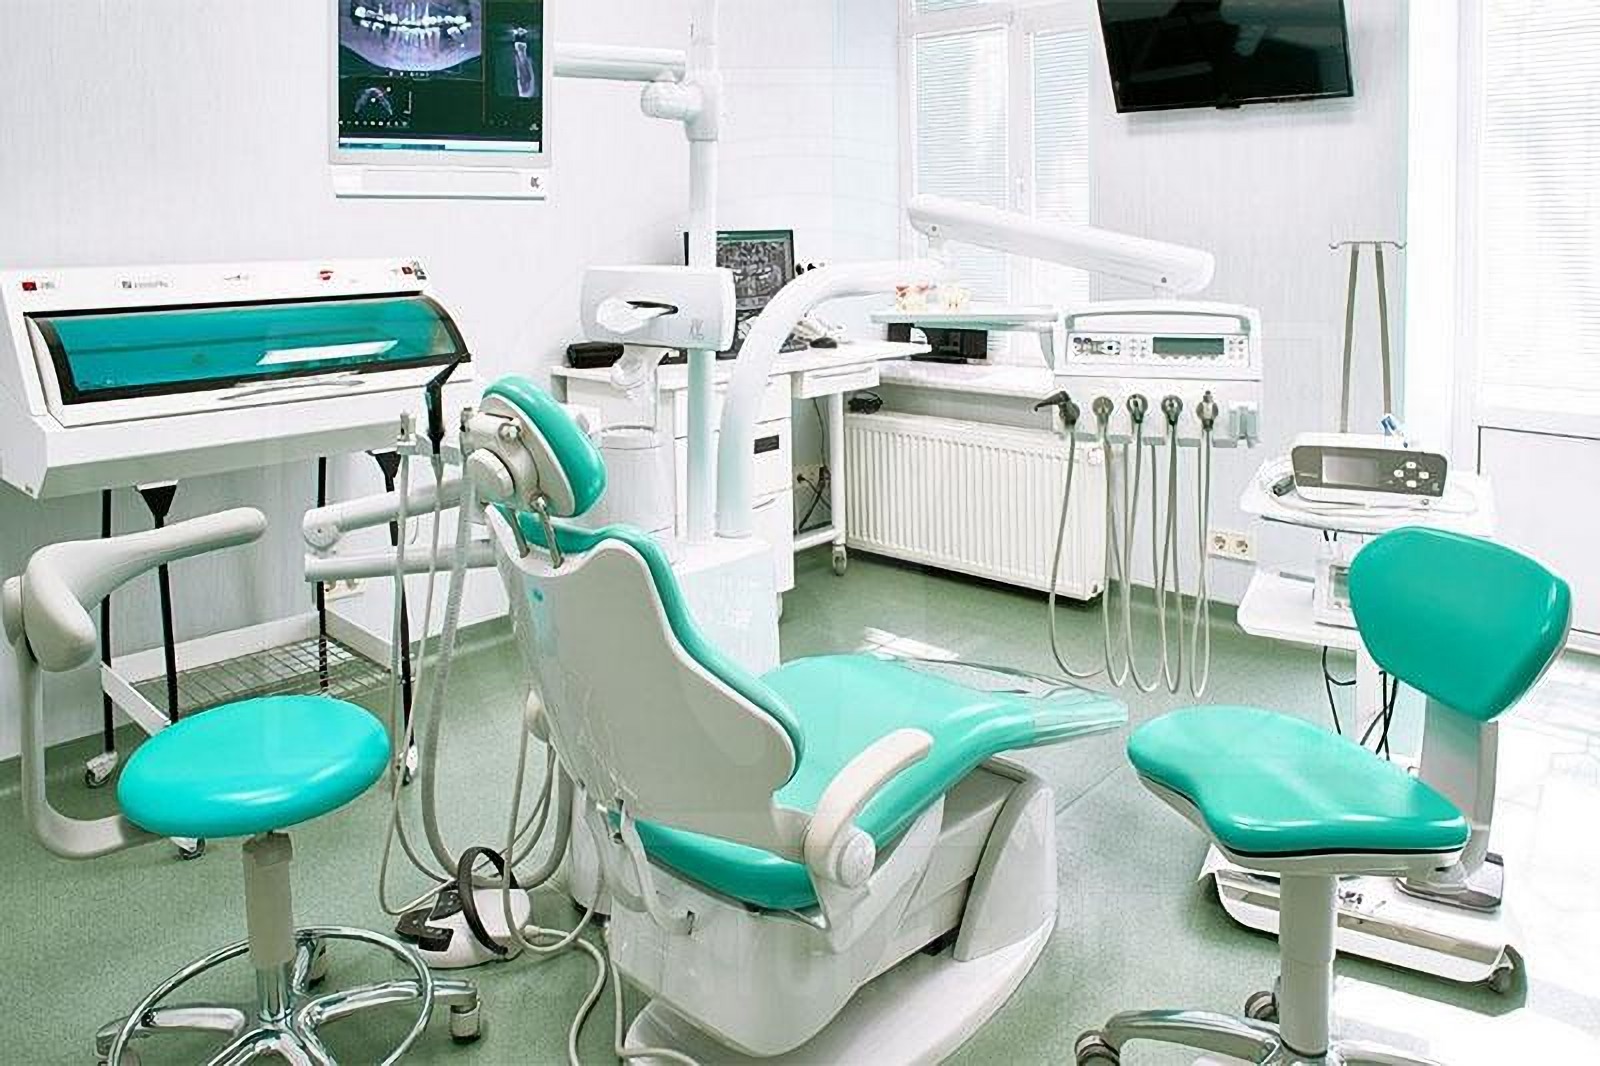 Стоматологический кабинет клиники TrioDent Одесса Украина стоматологический кабинет клиники TrioDent